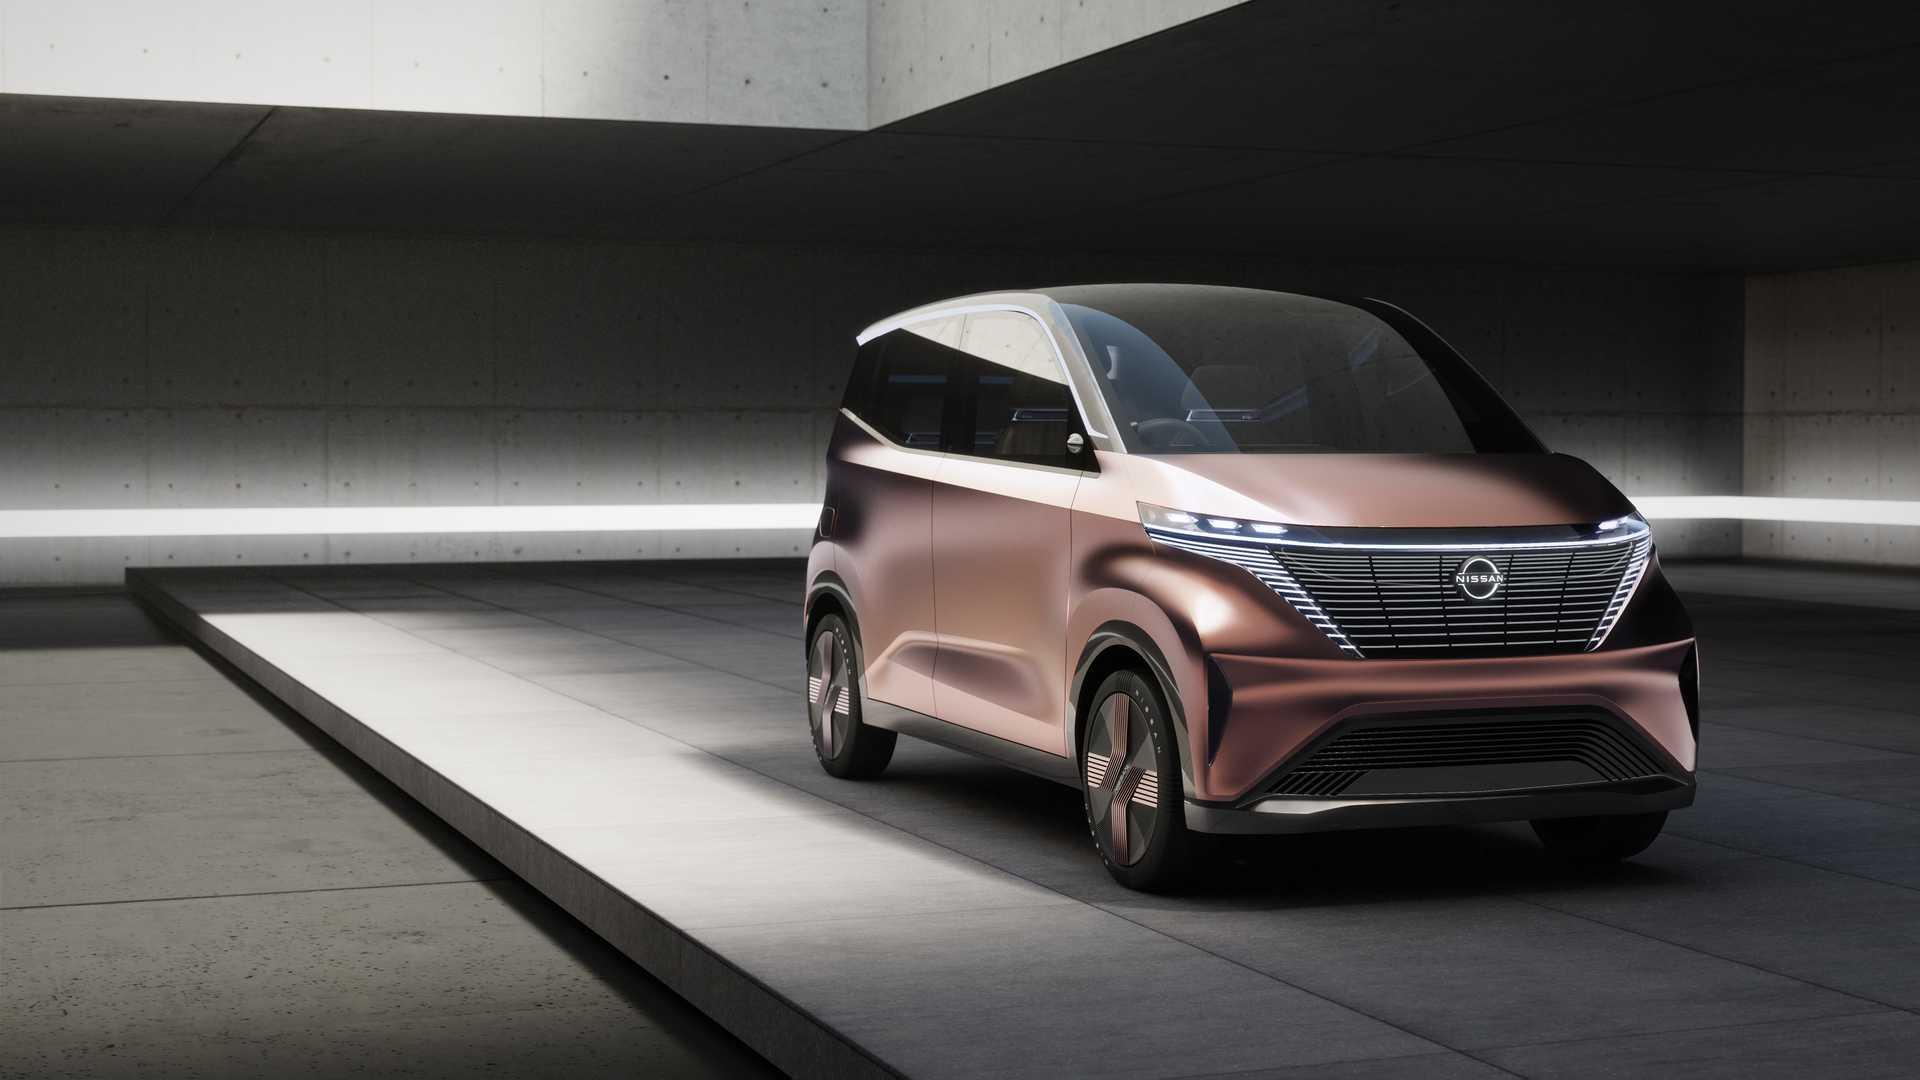 เล็กแต่หรู! Nissan IMk Concept รถยนต์ไฟฟ้าต้นแบบเตรียมเปิดตัวที่ญี่ปุ่นเร็ววันนี้